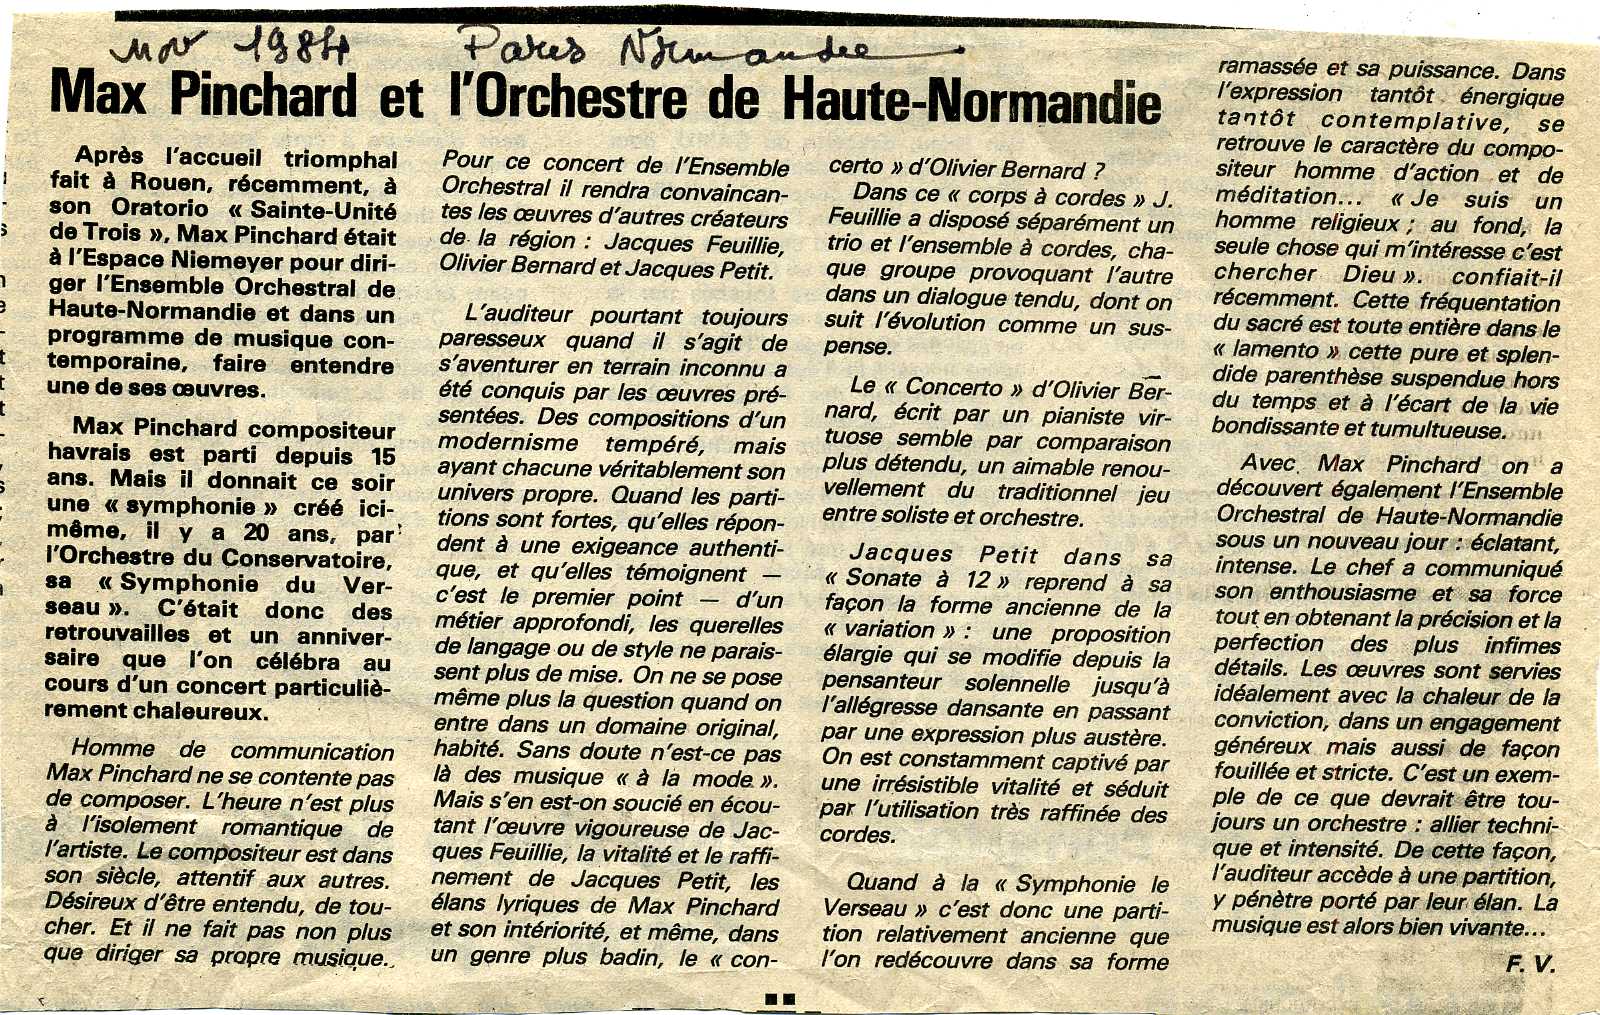 Max Pinchard et l'Orchestre Haute-Normandie